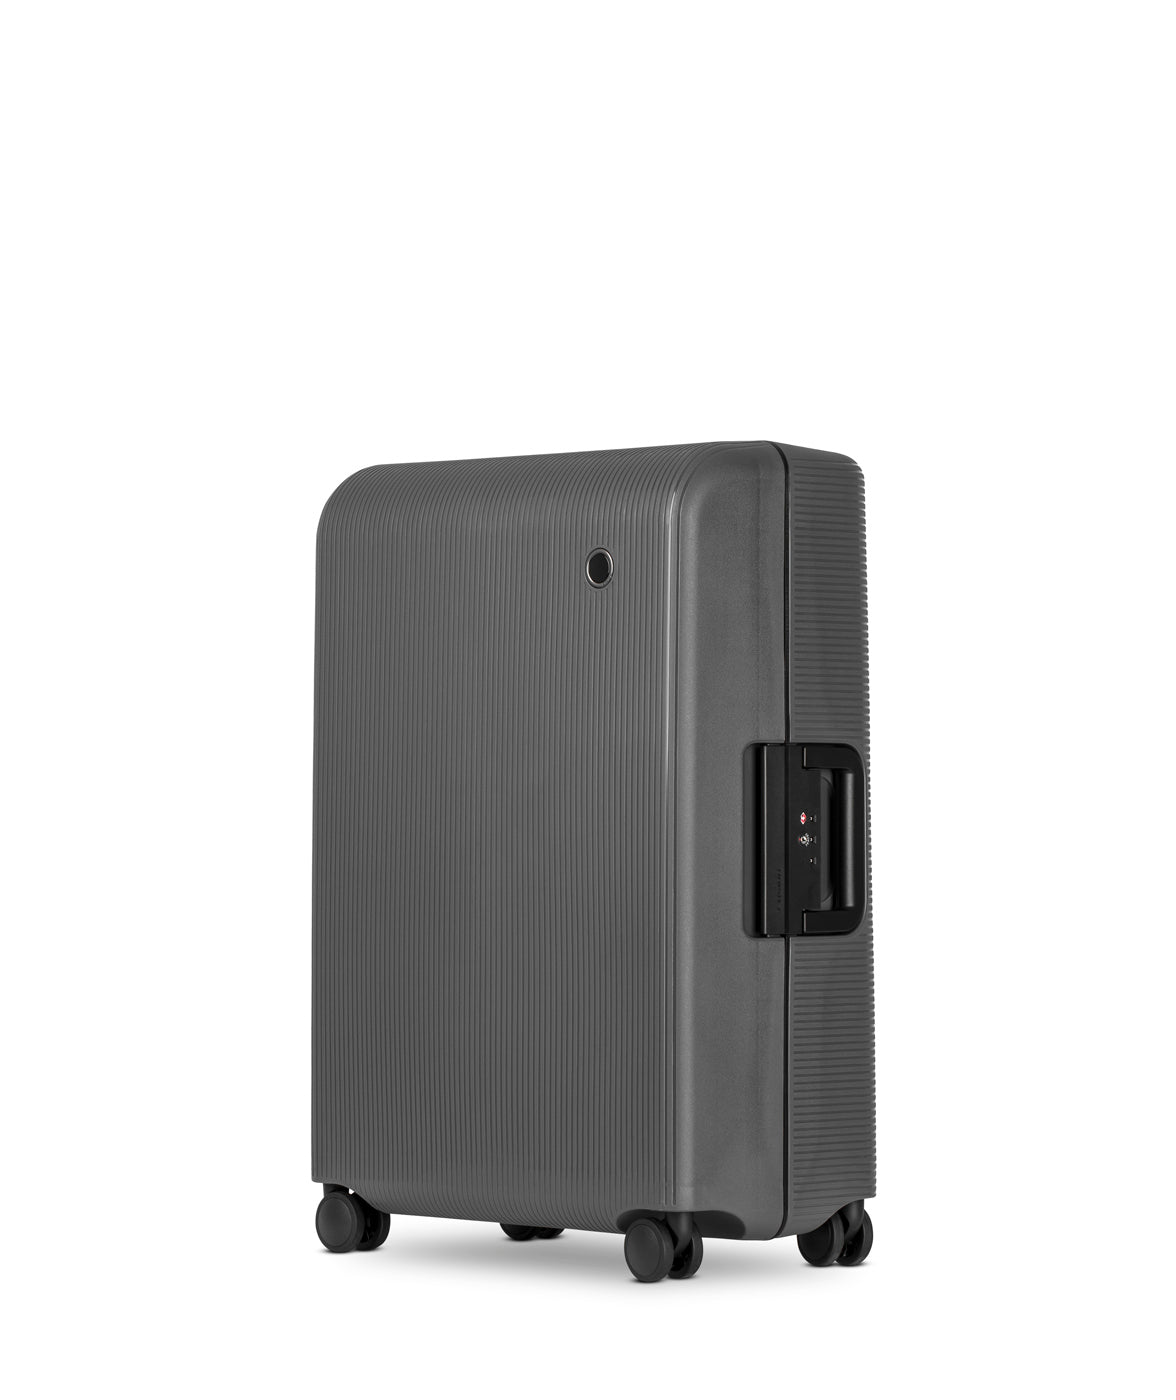 Echolac Fusion Koffer, Medium 66 cm, Dunkelgrau seitlich